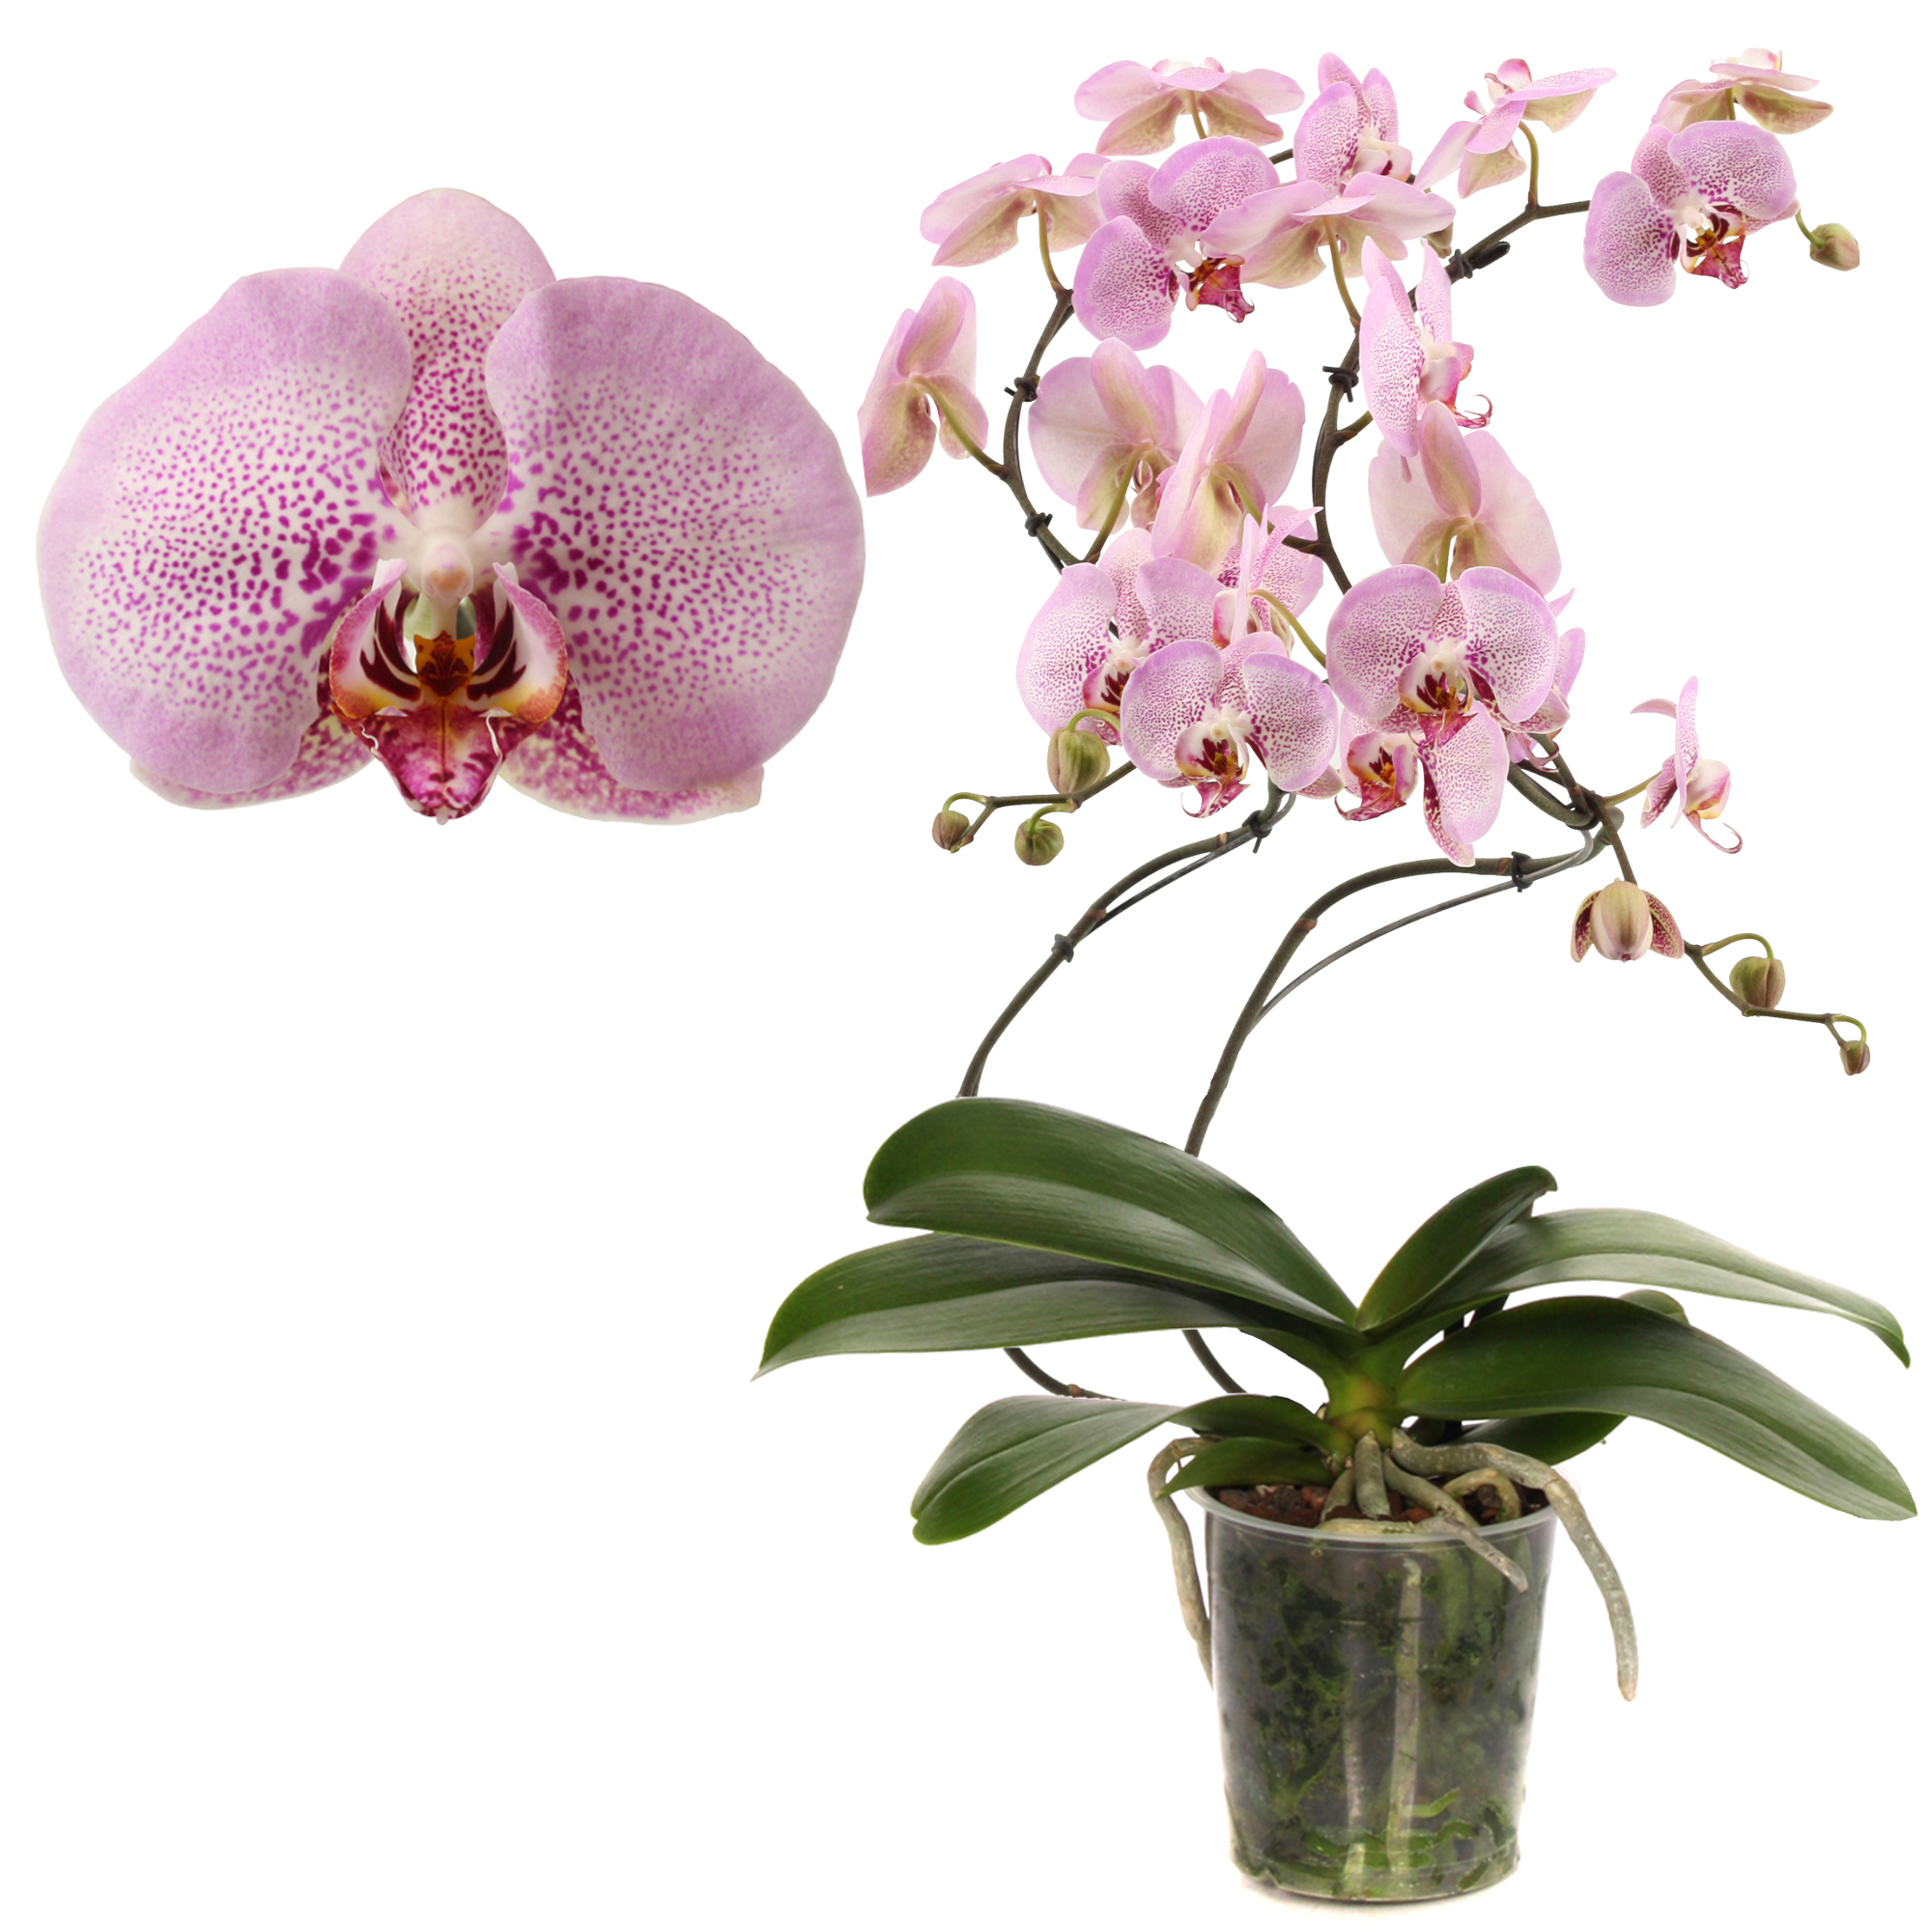 Schmetterlingsorchidee 'Diamond' 2 Rispen rosa, 12 cm Topf + product picture